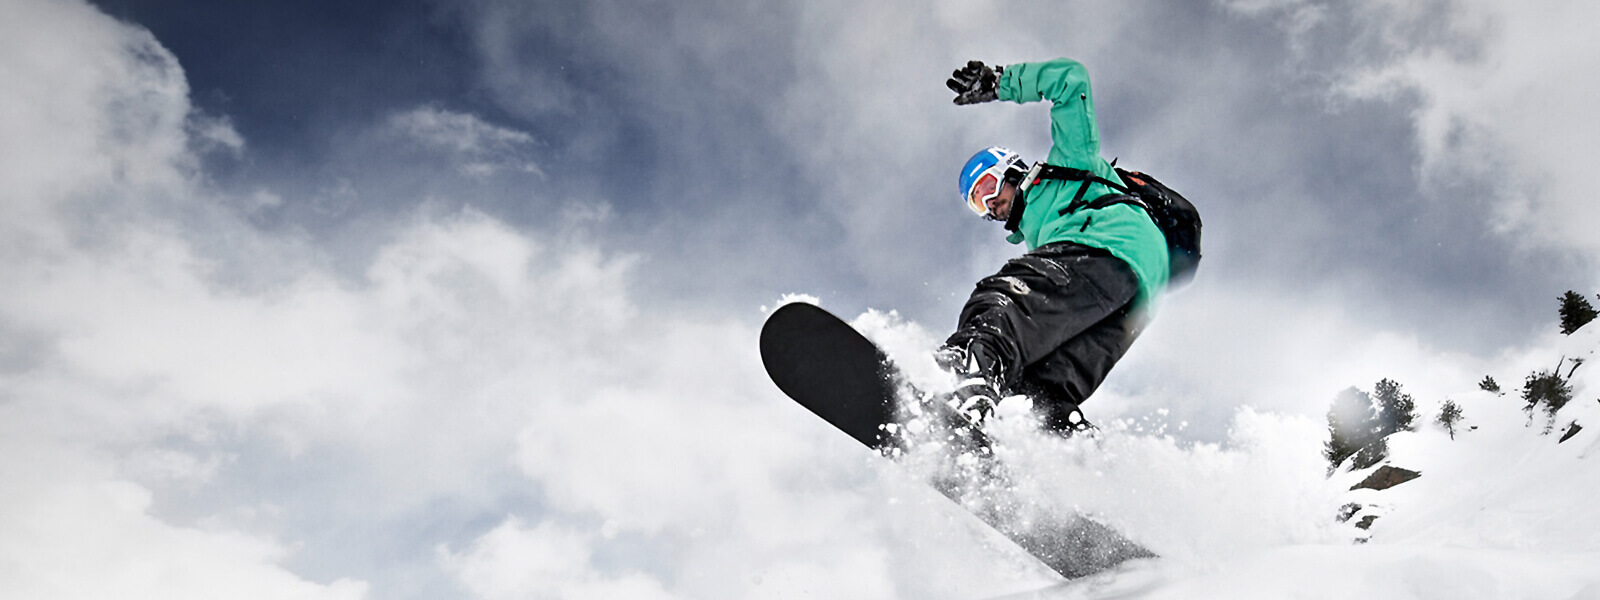 Kikkerperspectief: snowboarders in een groene jas komen van boven boven een kuif bord en veel gefluisterde sneeuw is te zien